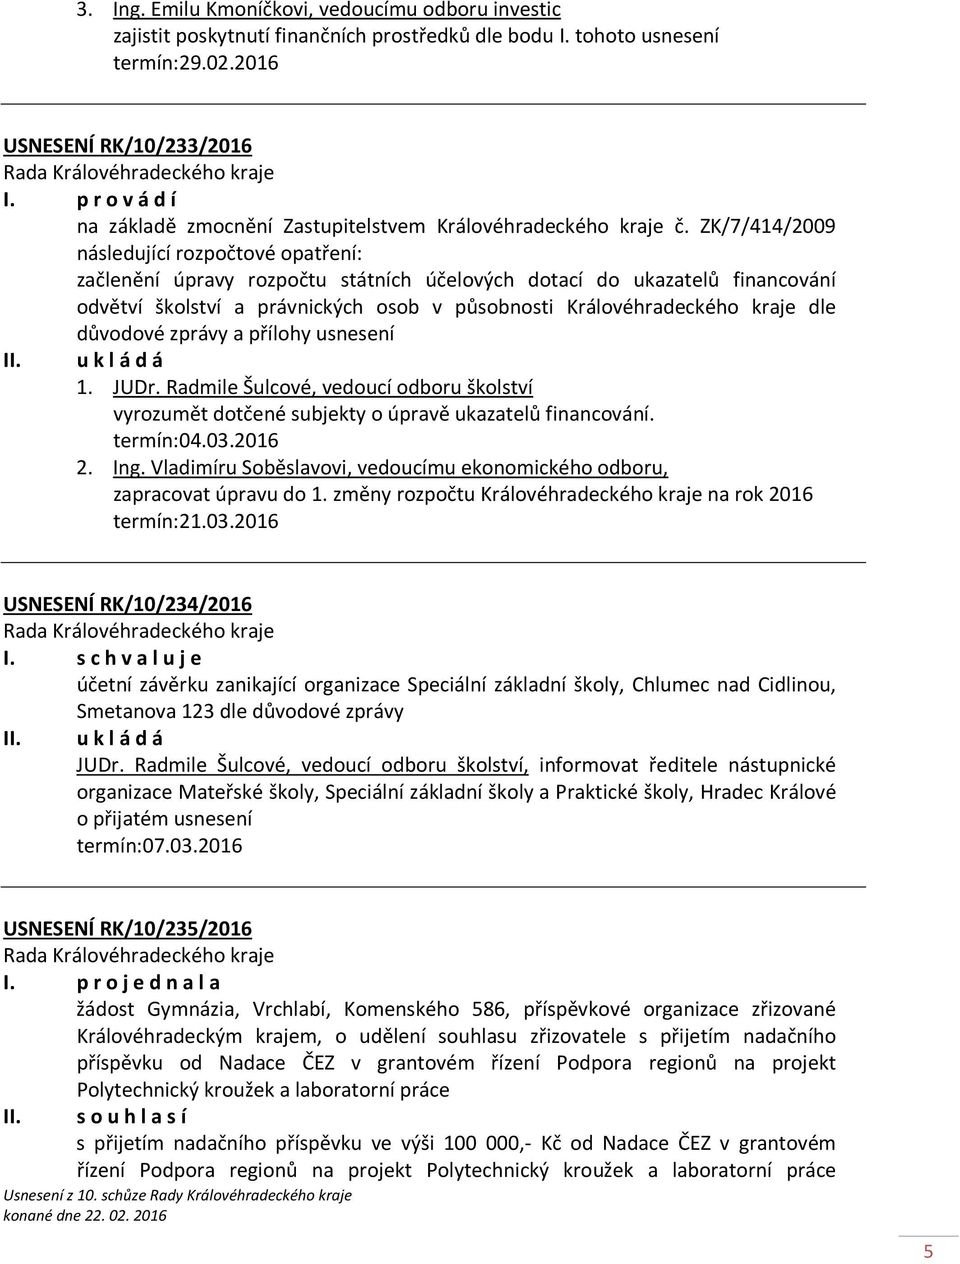 ZK/7/414/2009 následující rozpočtové opatření: začlenění úpravy rozpočtu státních účelových dotací do ukazatelů financování odvětví školství a právnických osob v působnosti Královéhradeckého kraje